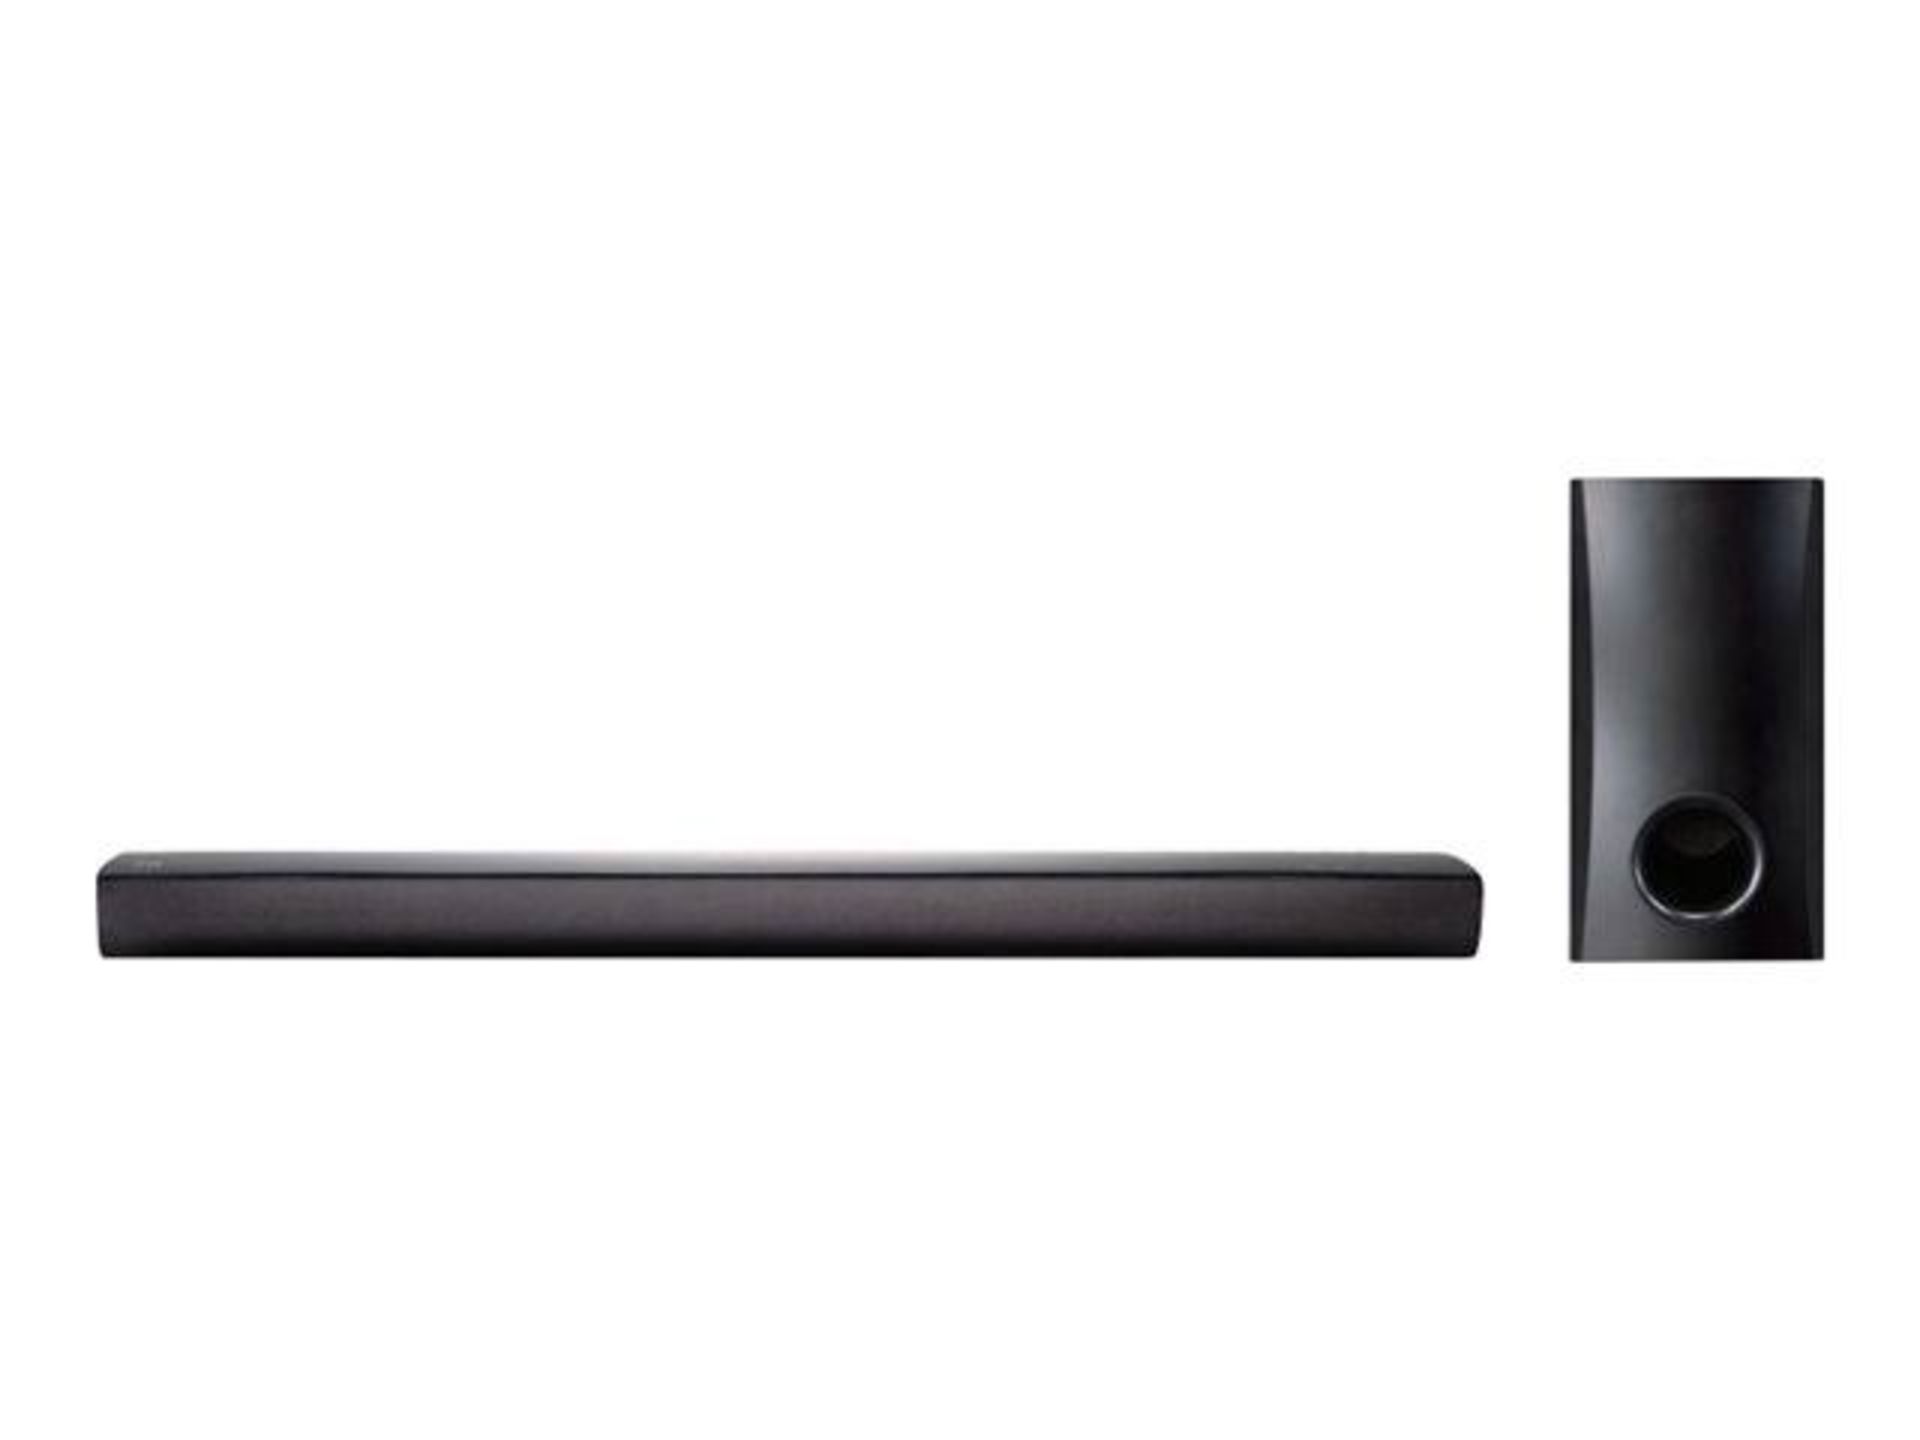 V Grade A NB2540 LG 120W Home Cinema Soundbar System 2.1 With Sub - Image 5 of 5